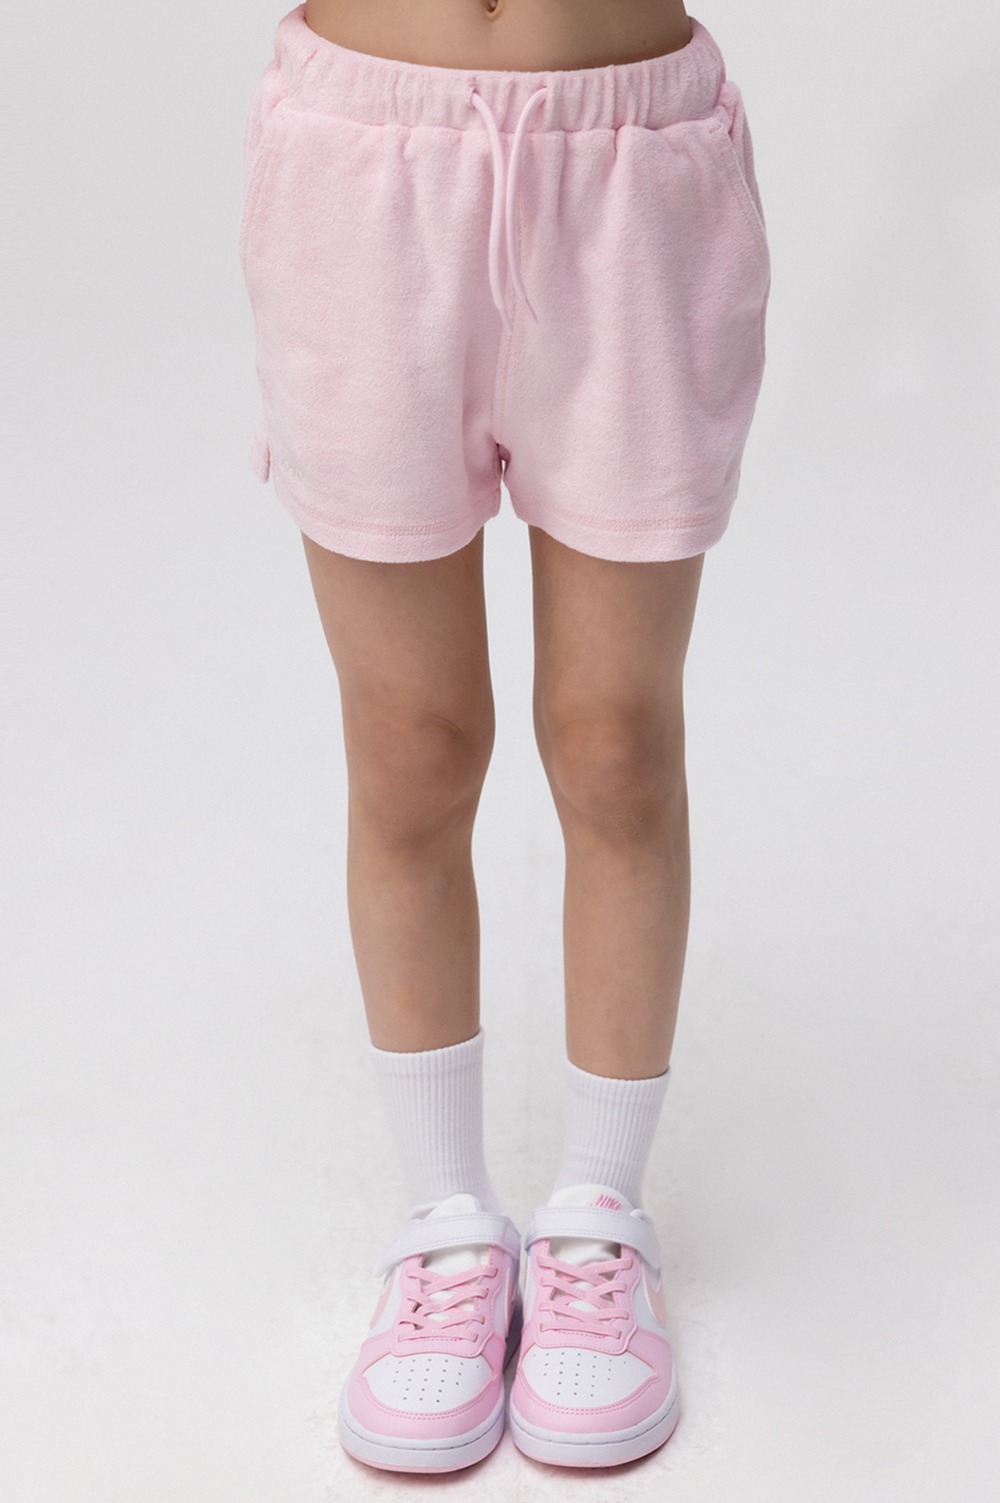 clove - [24SS clove] Candy Terry Shorts_Kids (Pink)